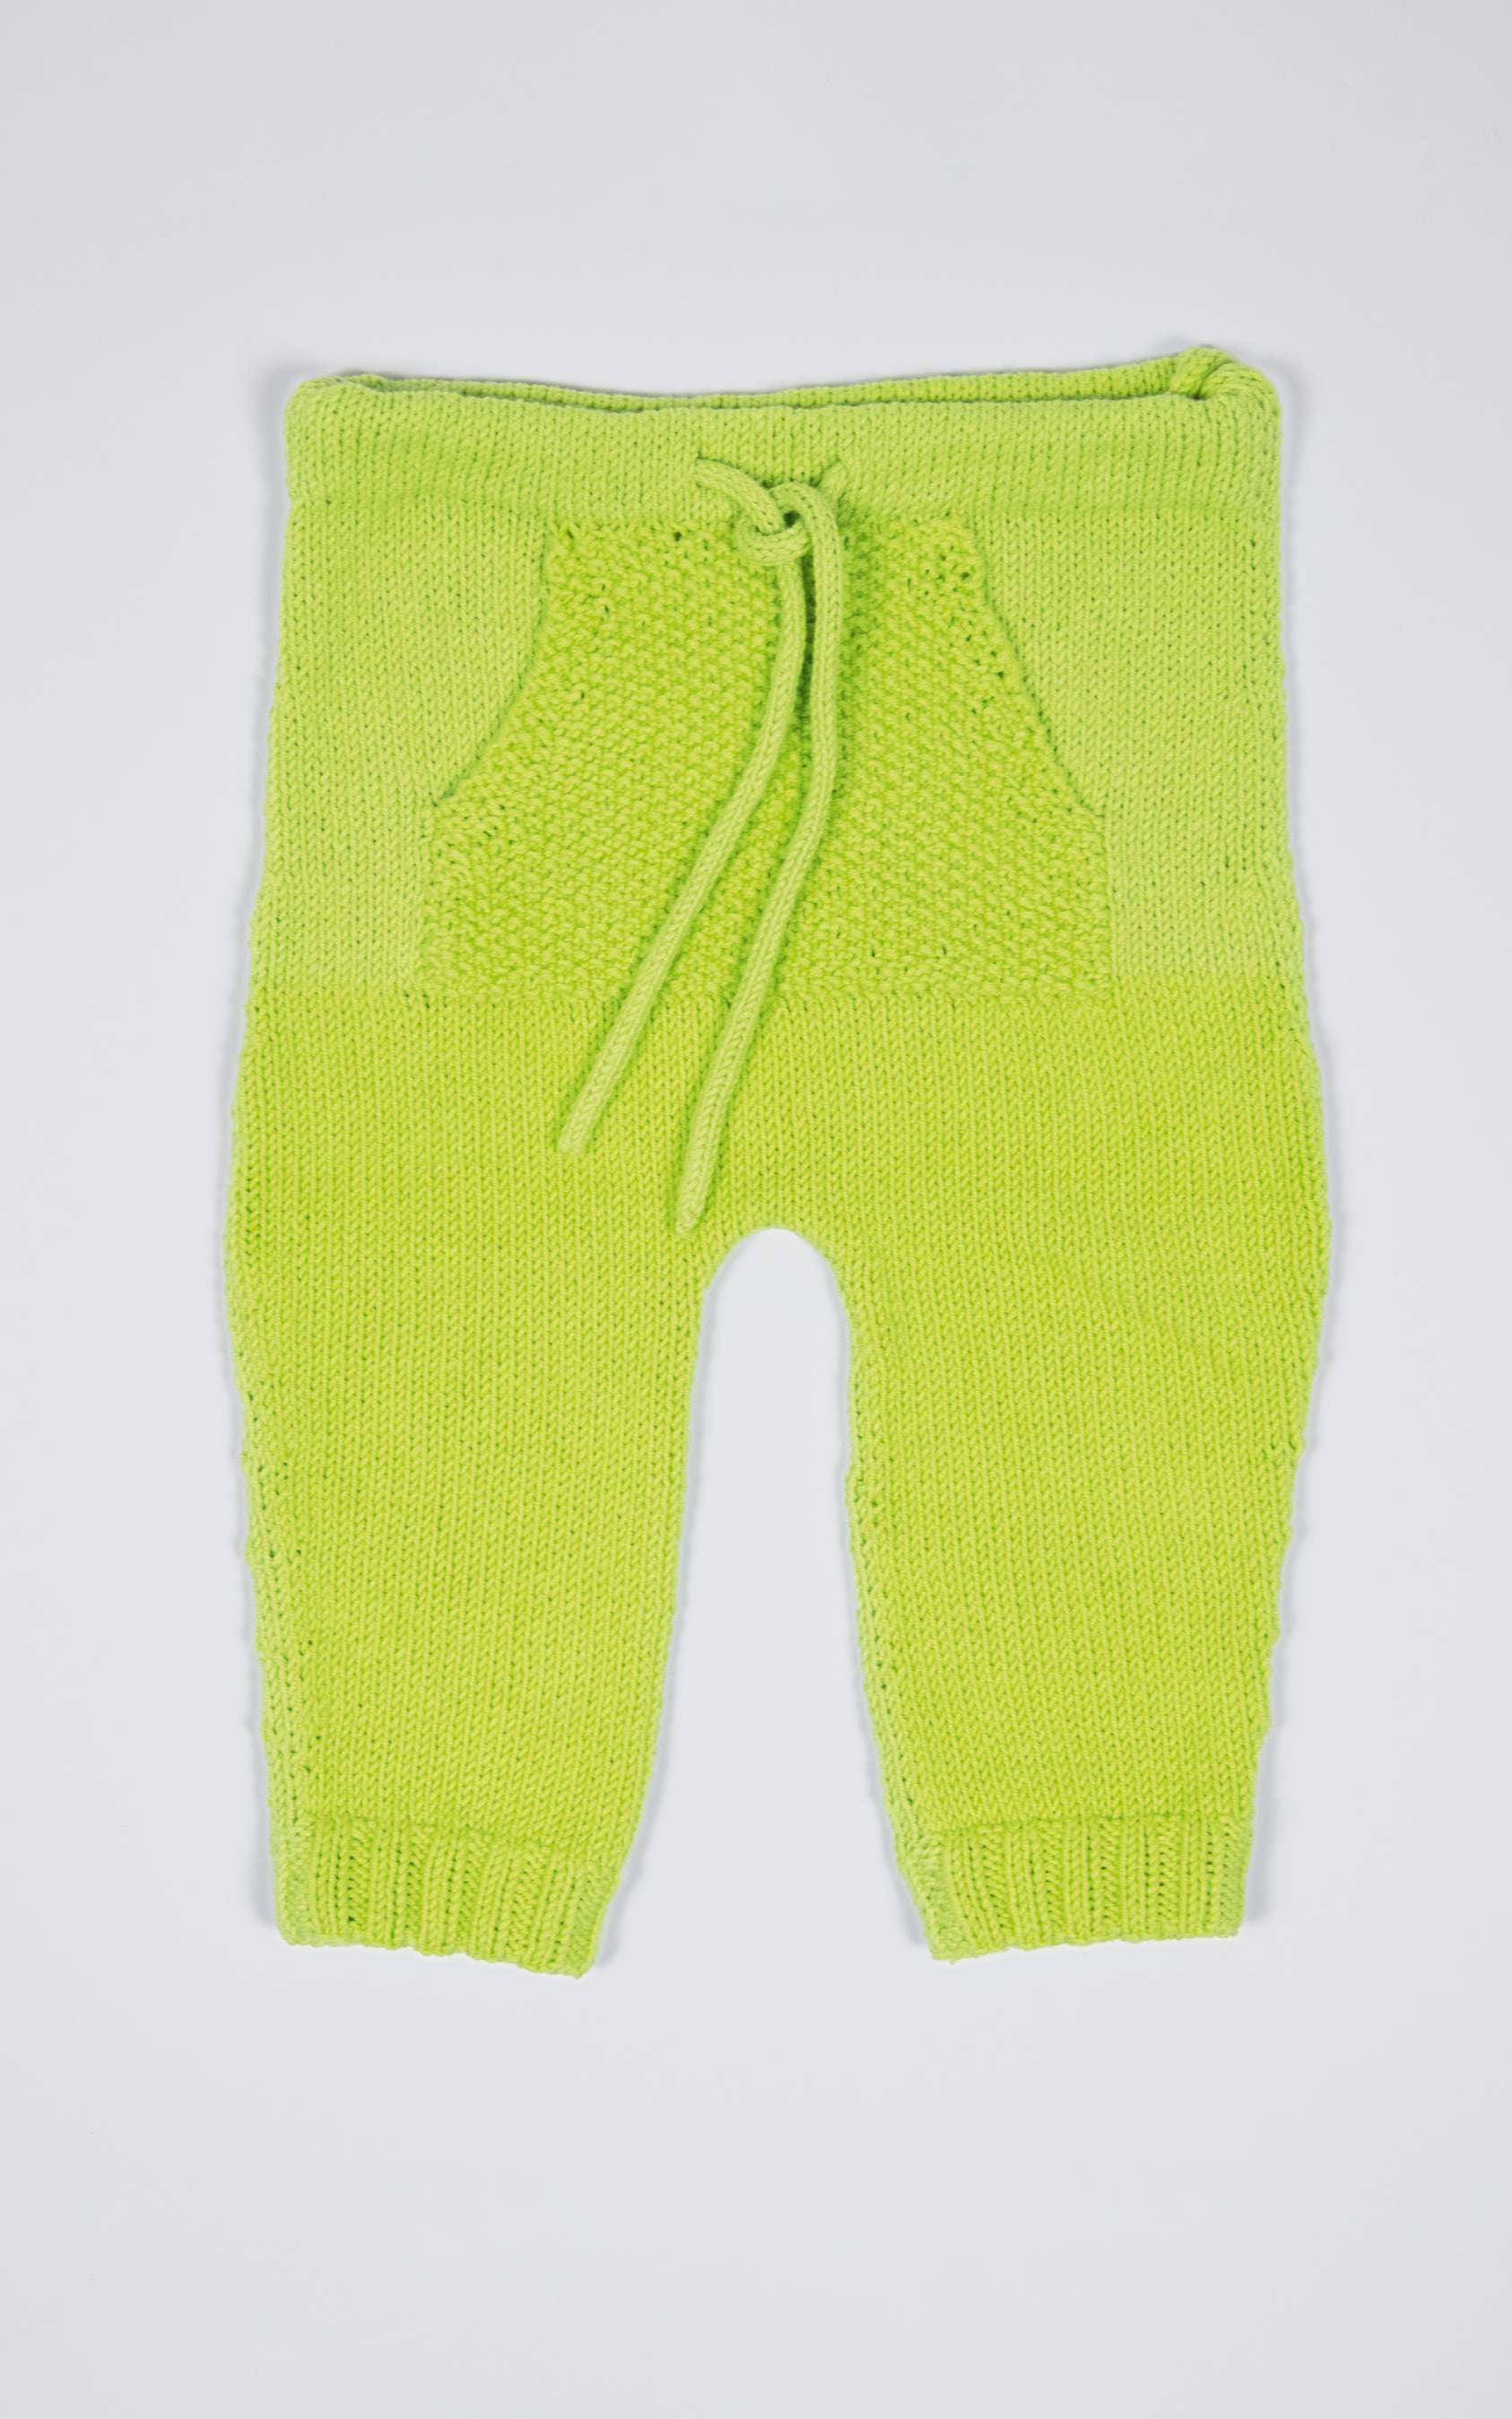 Baby Hose mit Bauchtasche - Strickset von LANA GROSSA jetzt online kaufen bei OONIQUE